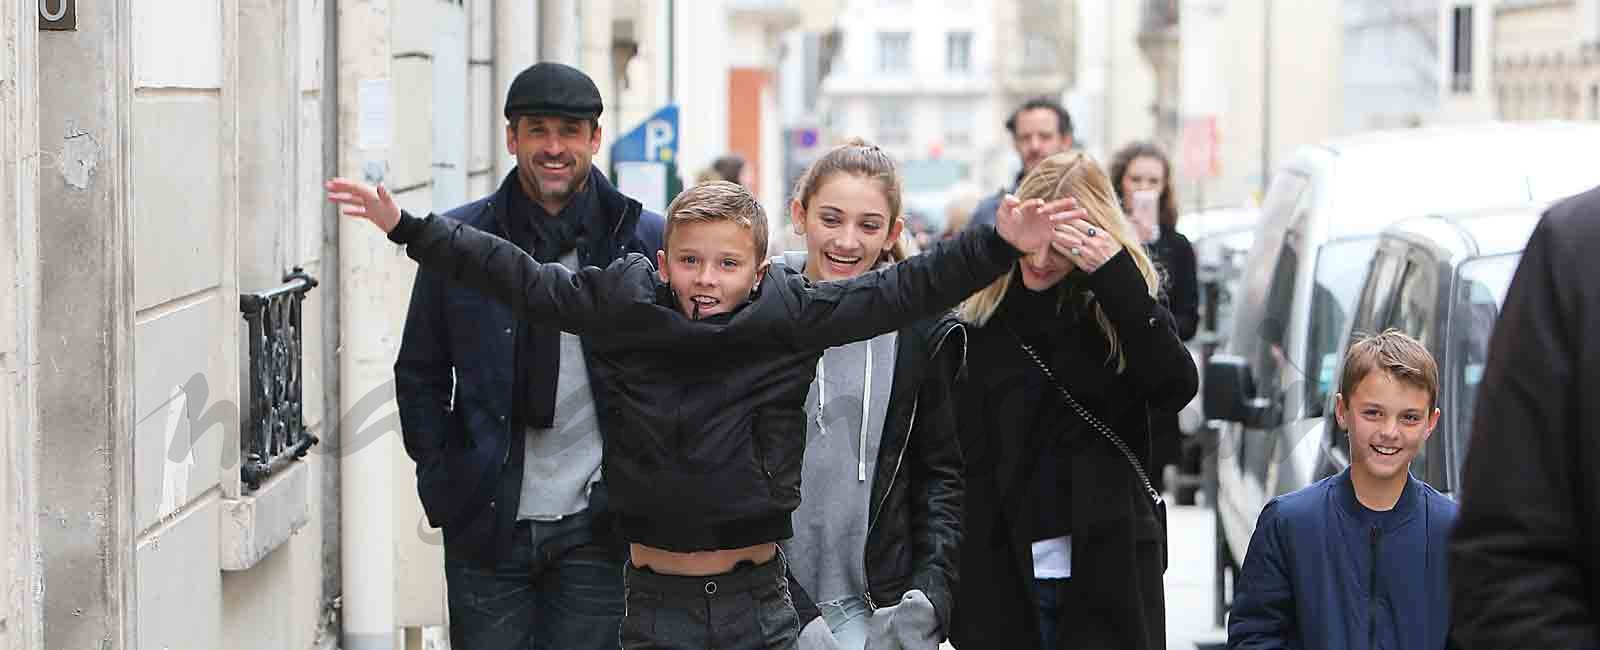 Patrick Dempsey y su familia, vacaciones en París